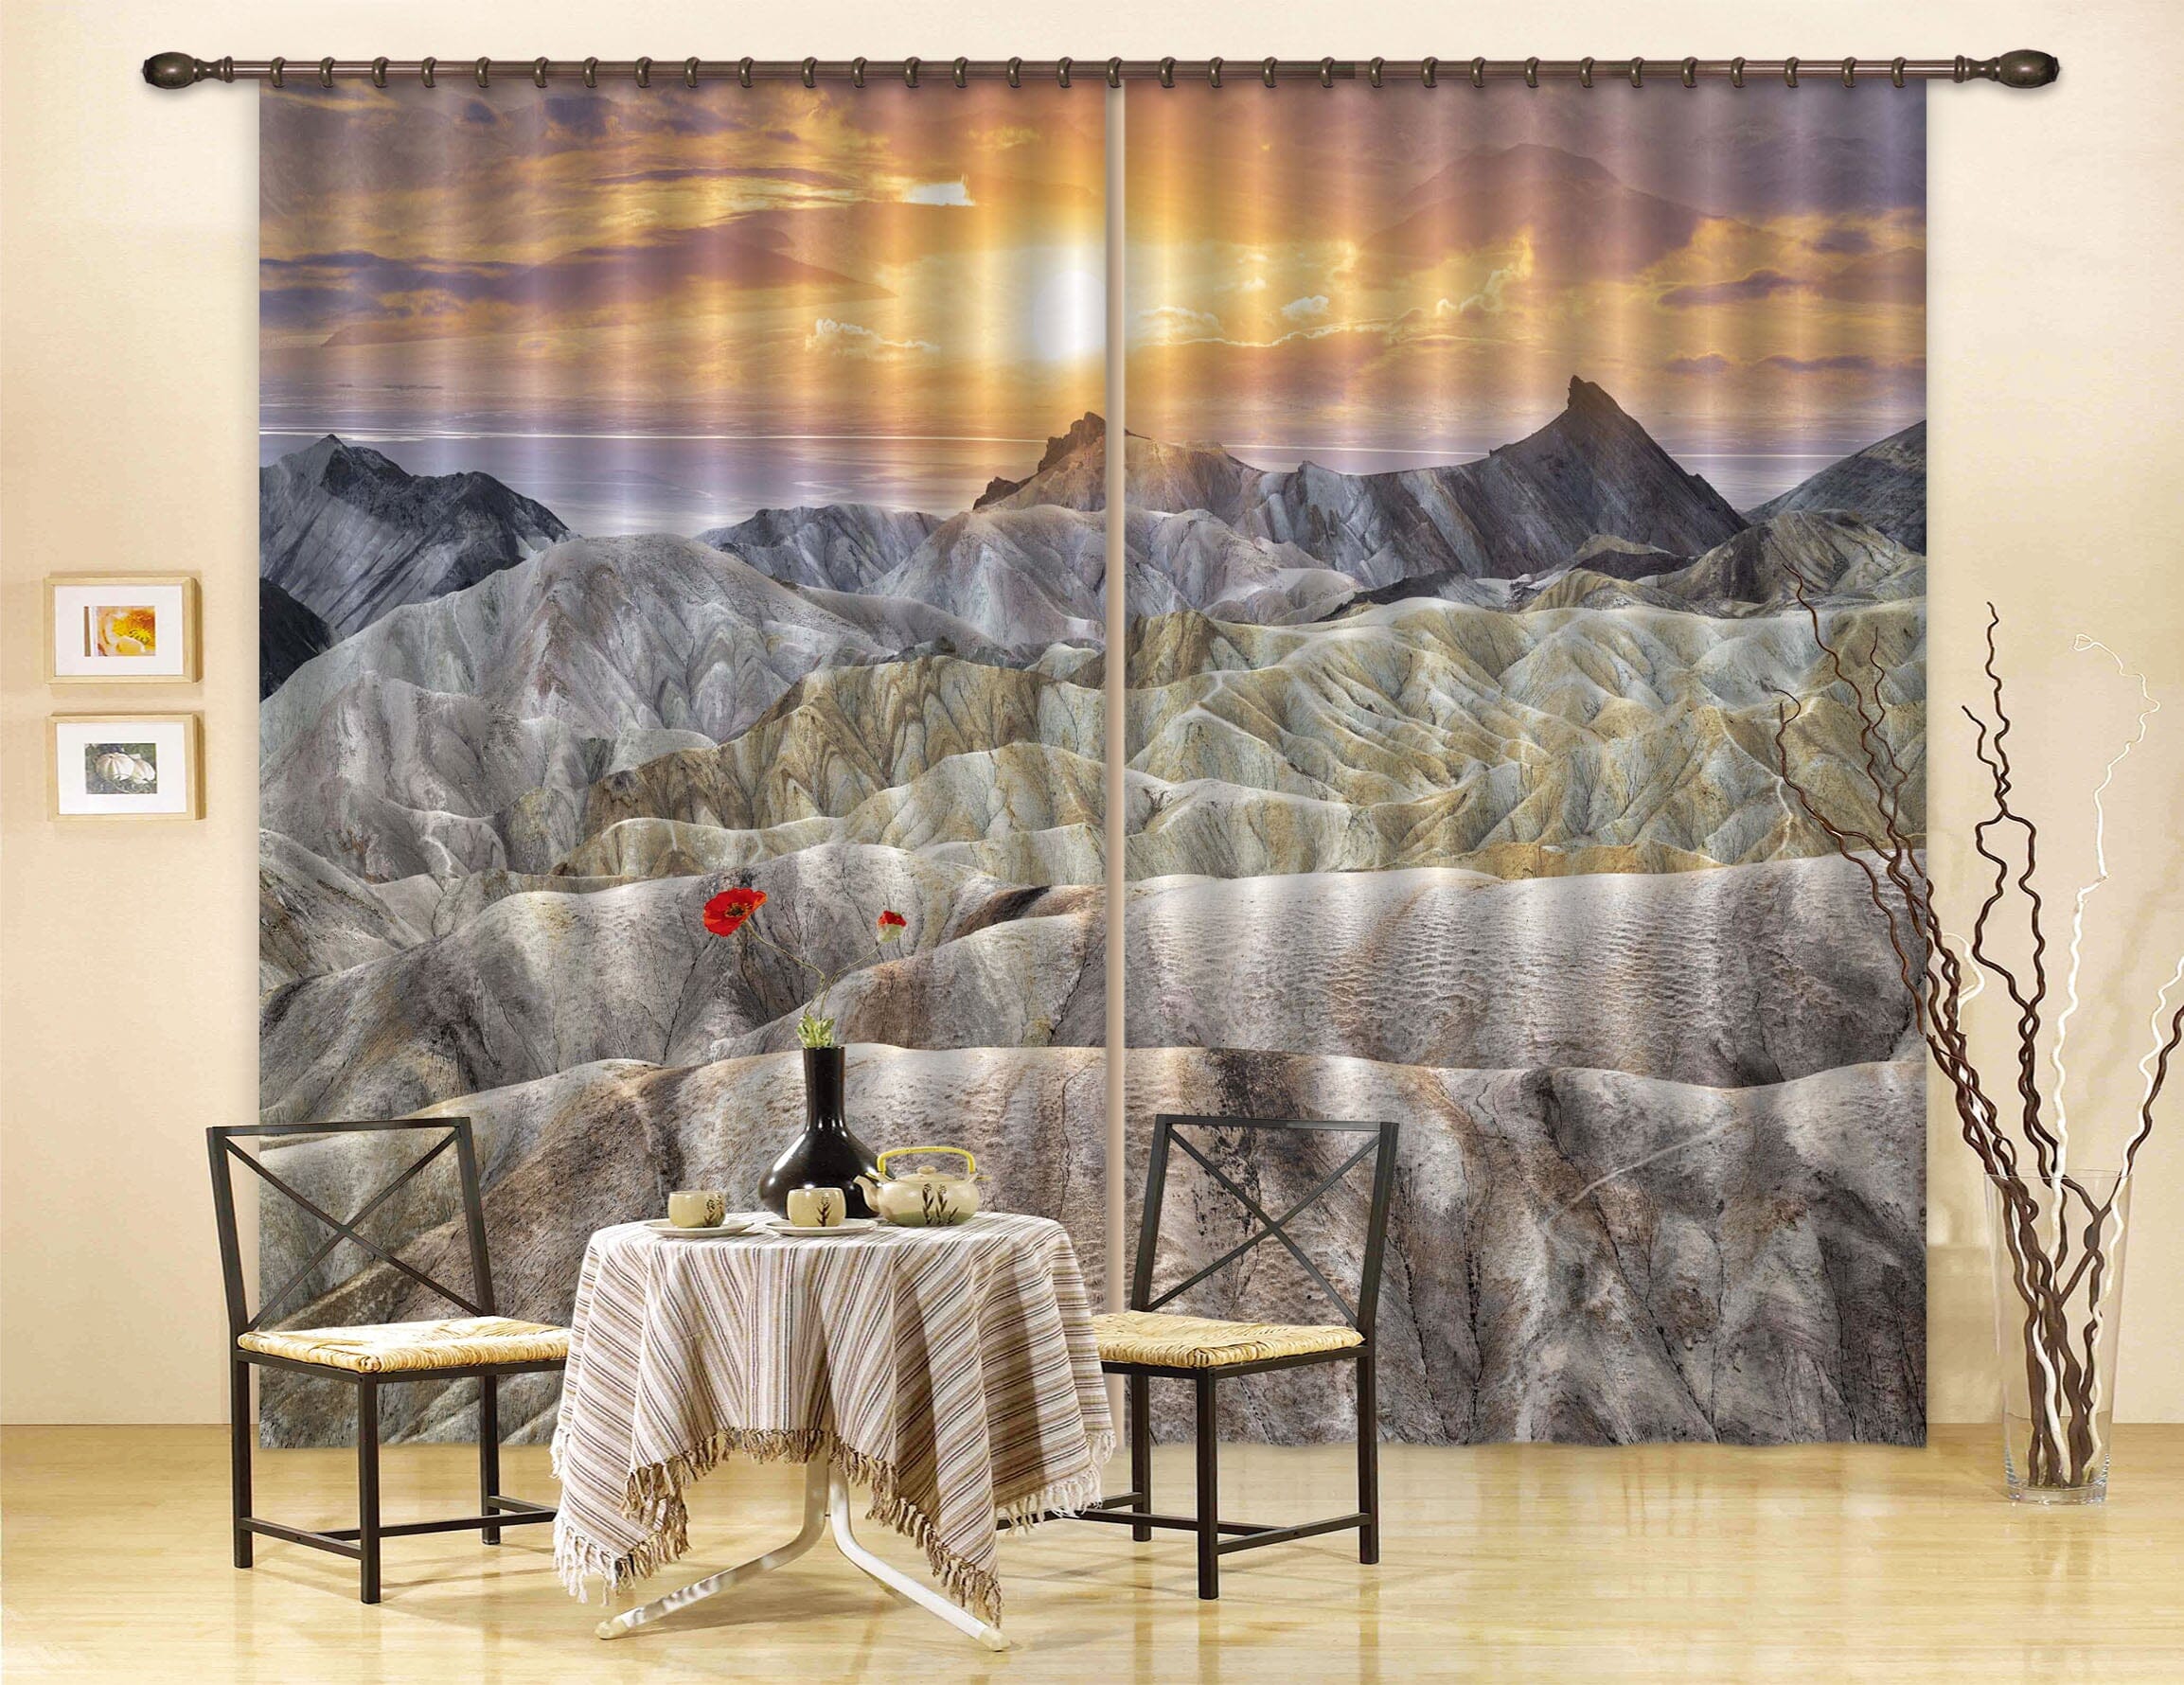 3D White Mountain Peak 196 Marco Carmassi Curtain Curtains Drapes Curtains AJ Creativity Home 